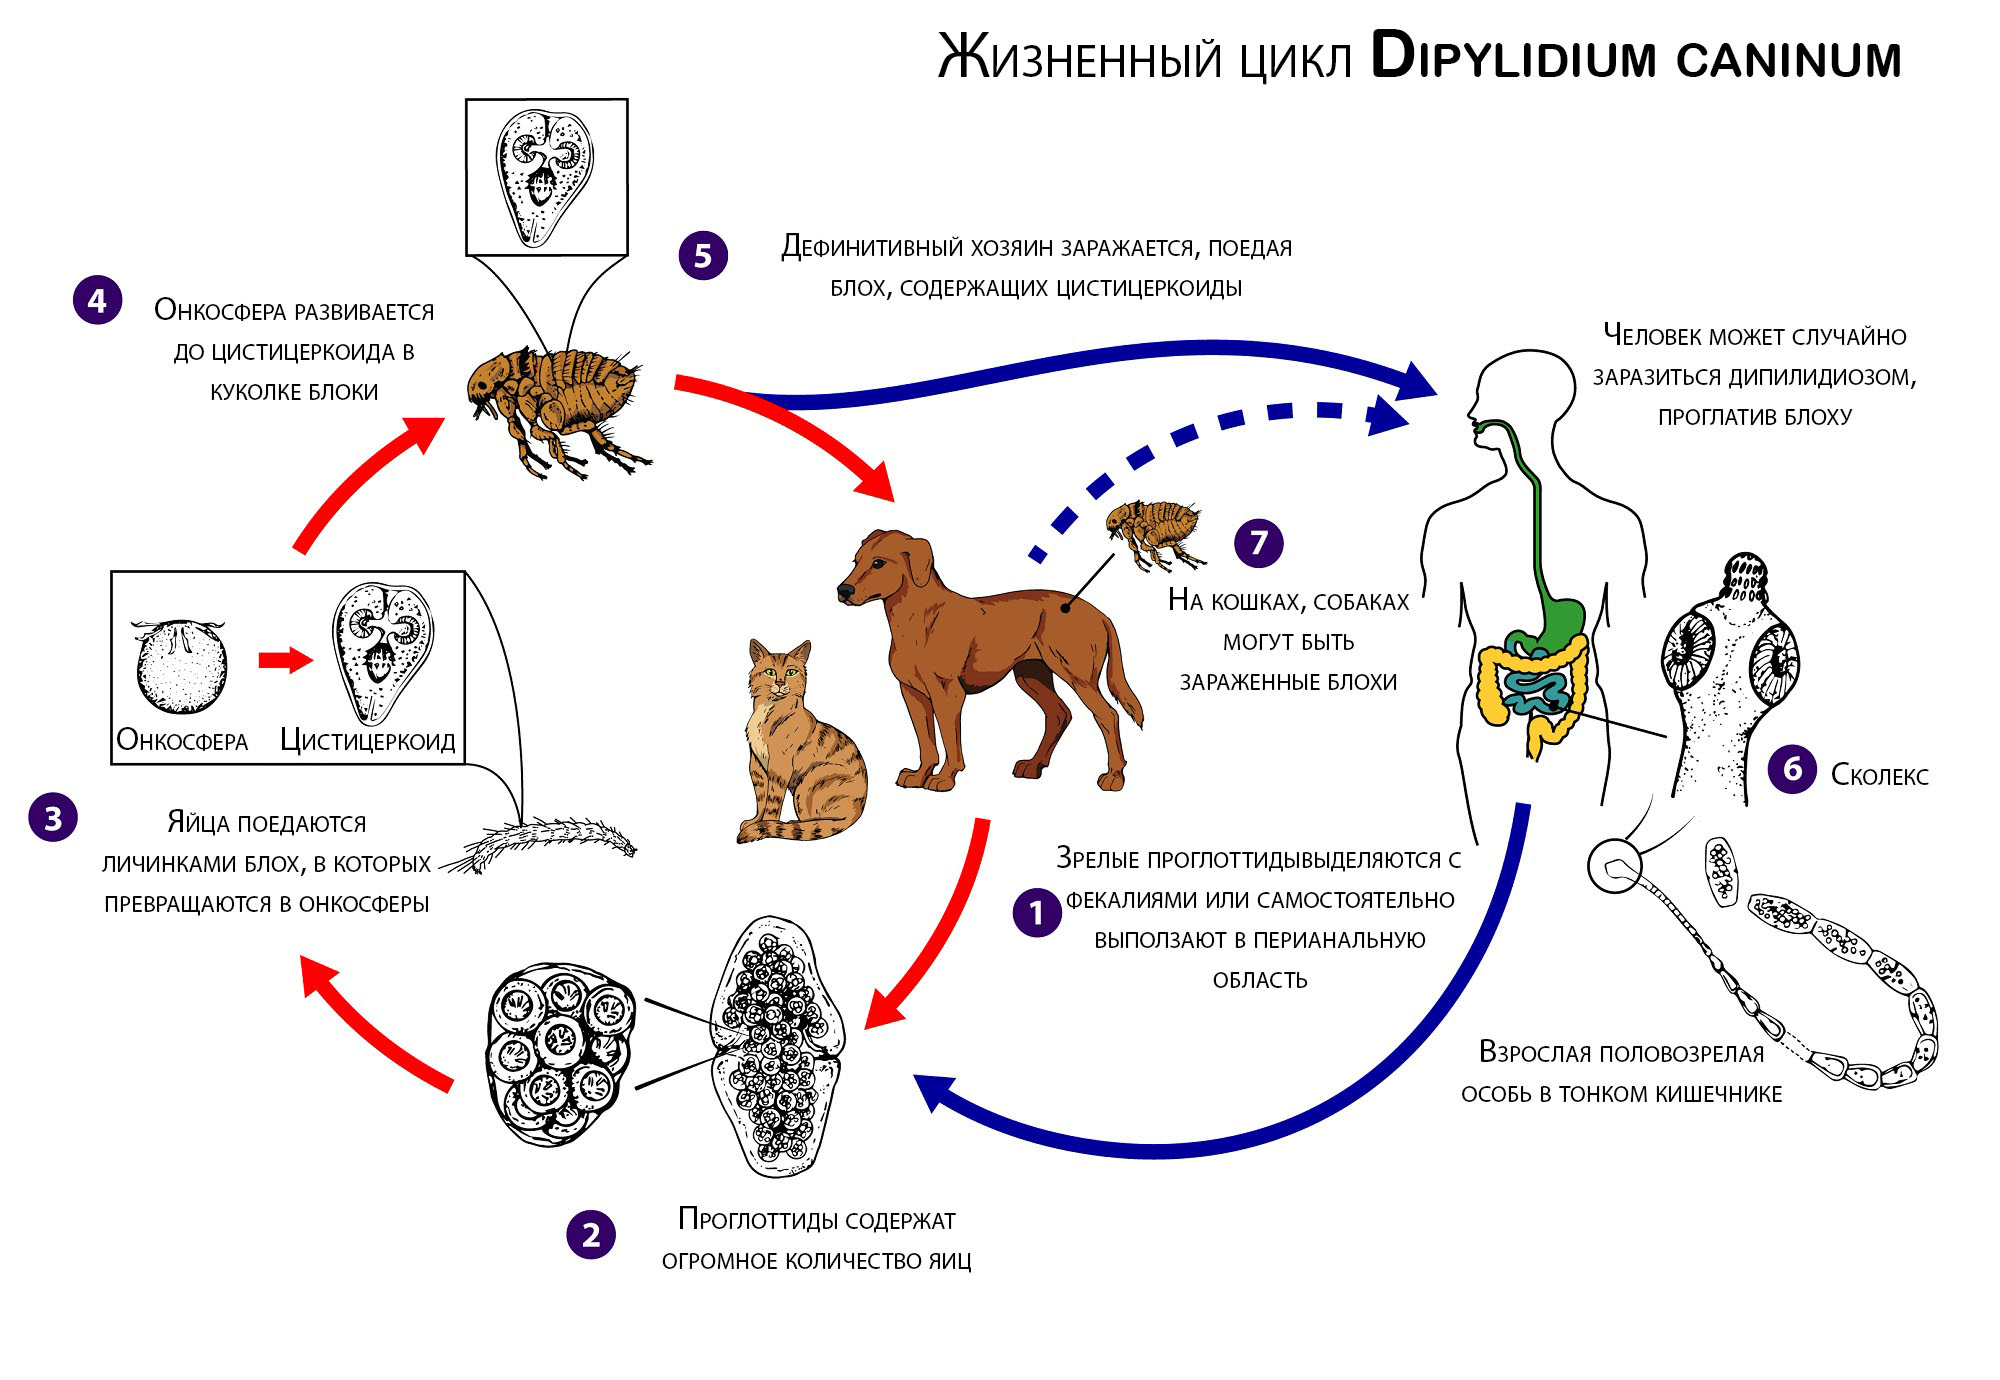 Dipylidium caninum. Онкосфера ленточных червей. Онкосфера это в паразитологии.